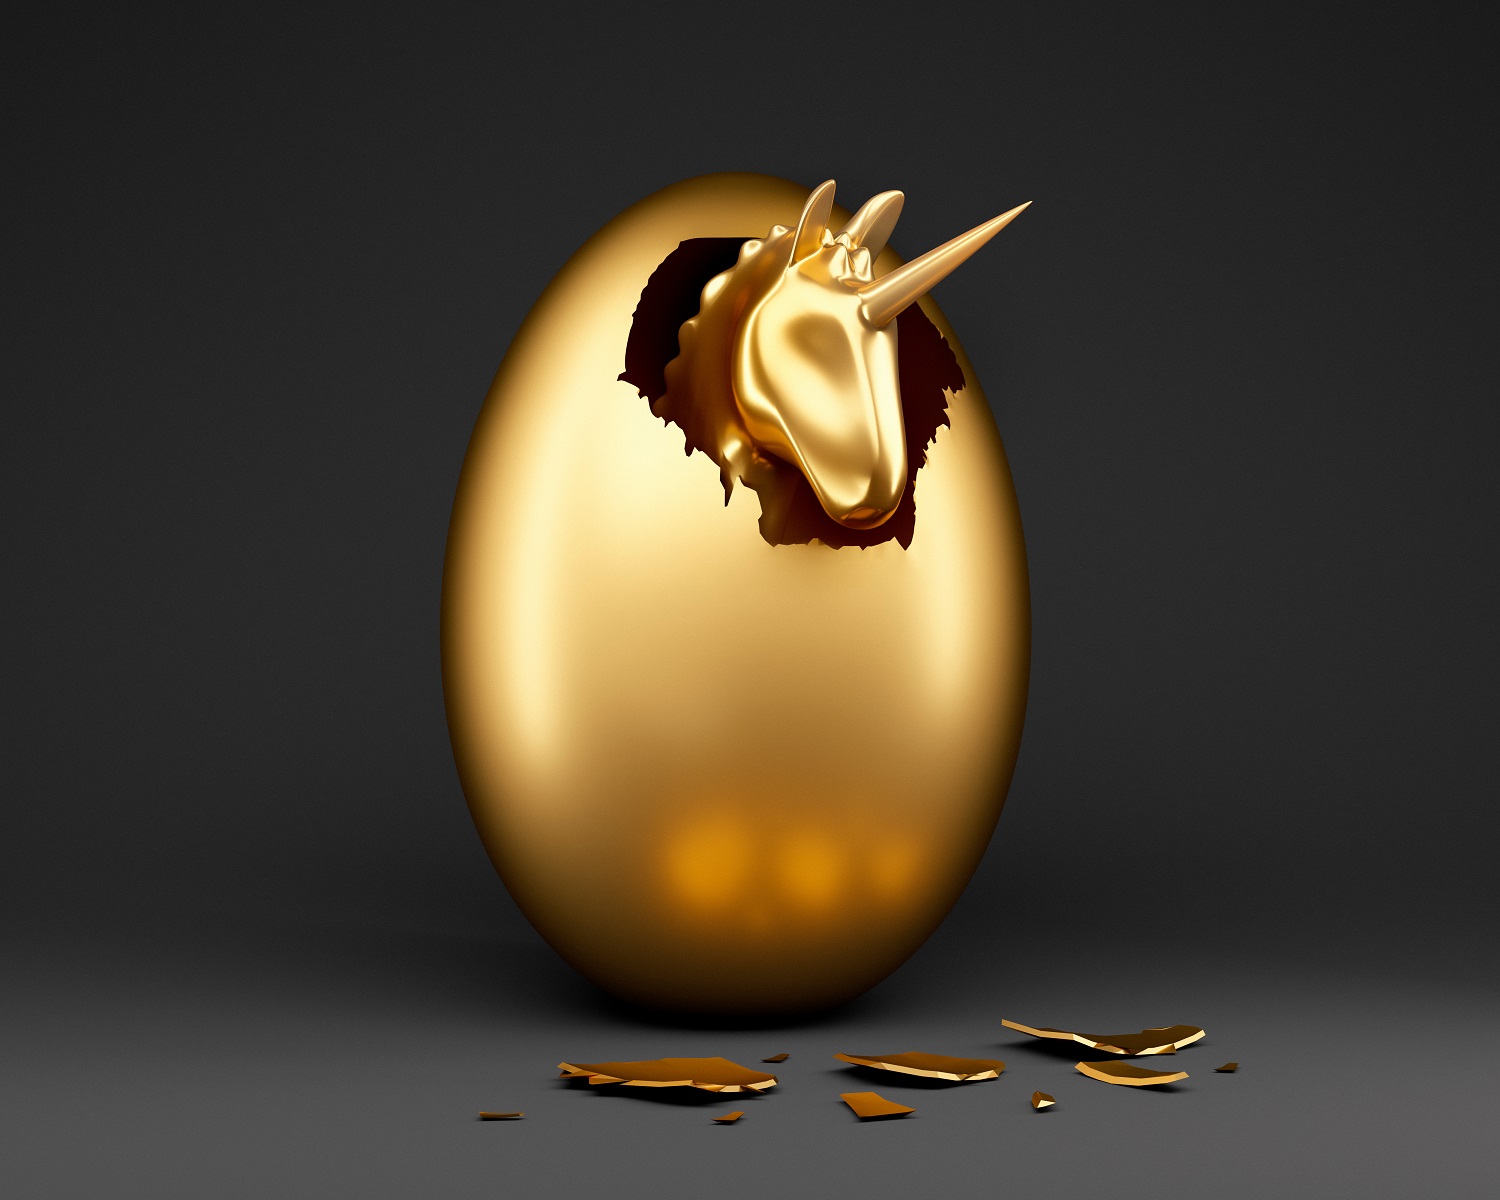 golden unicorn emerging from egg